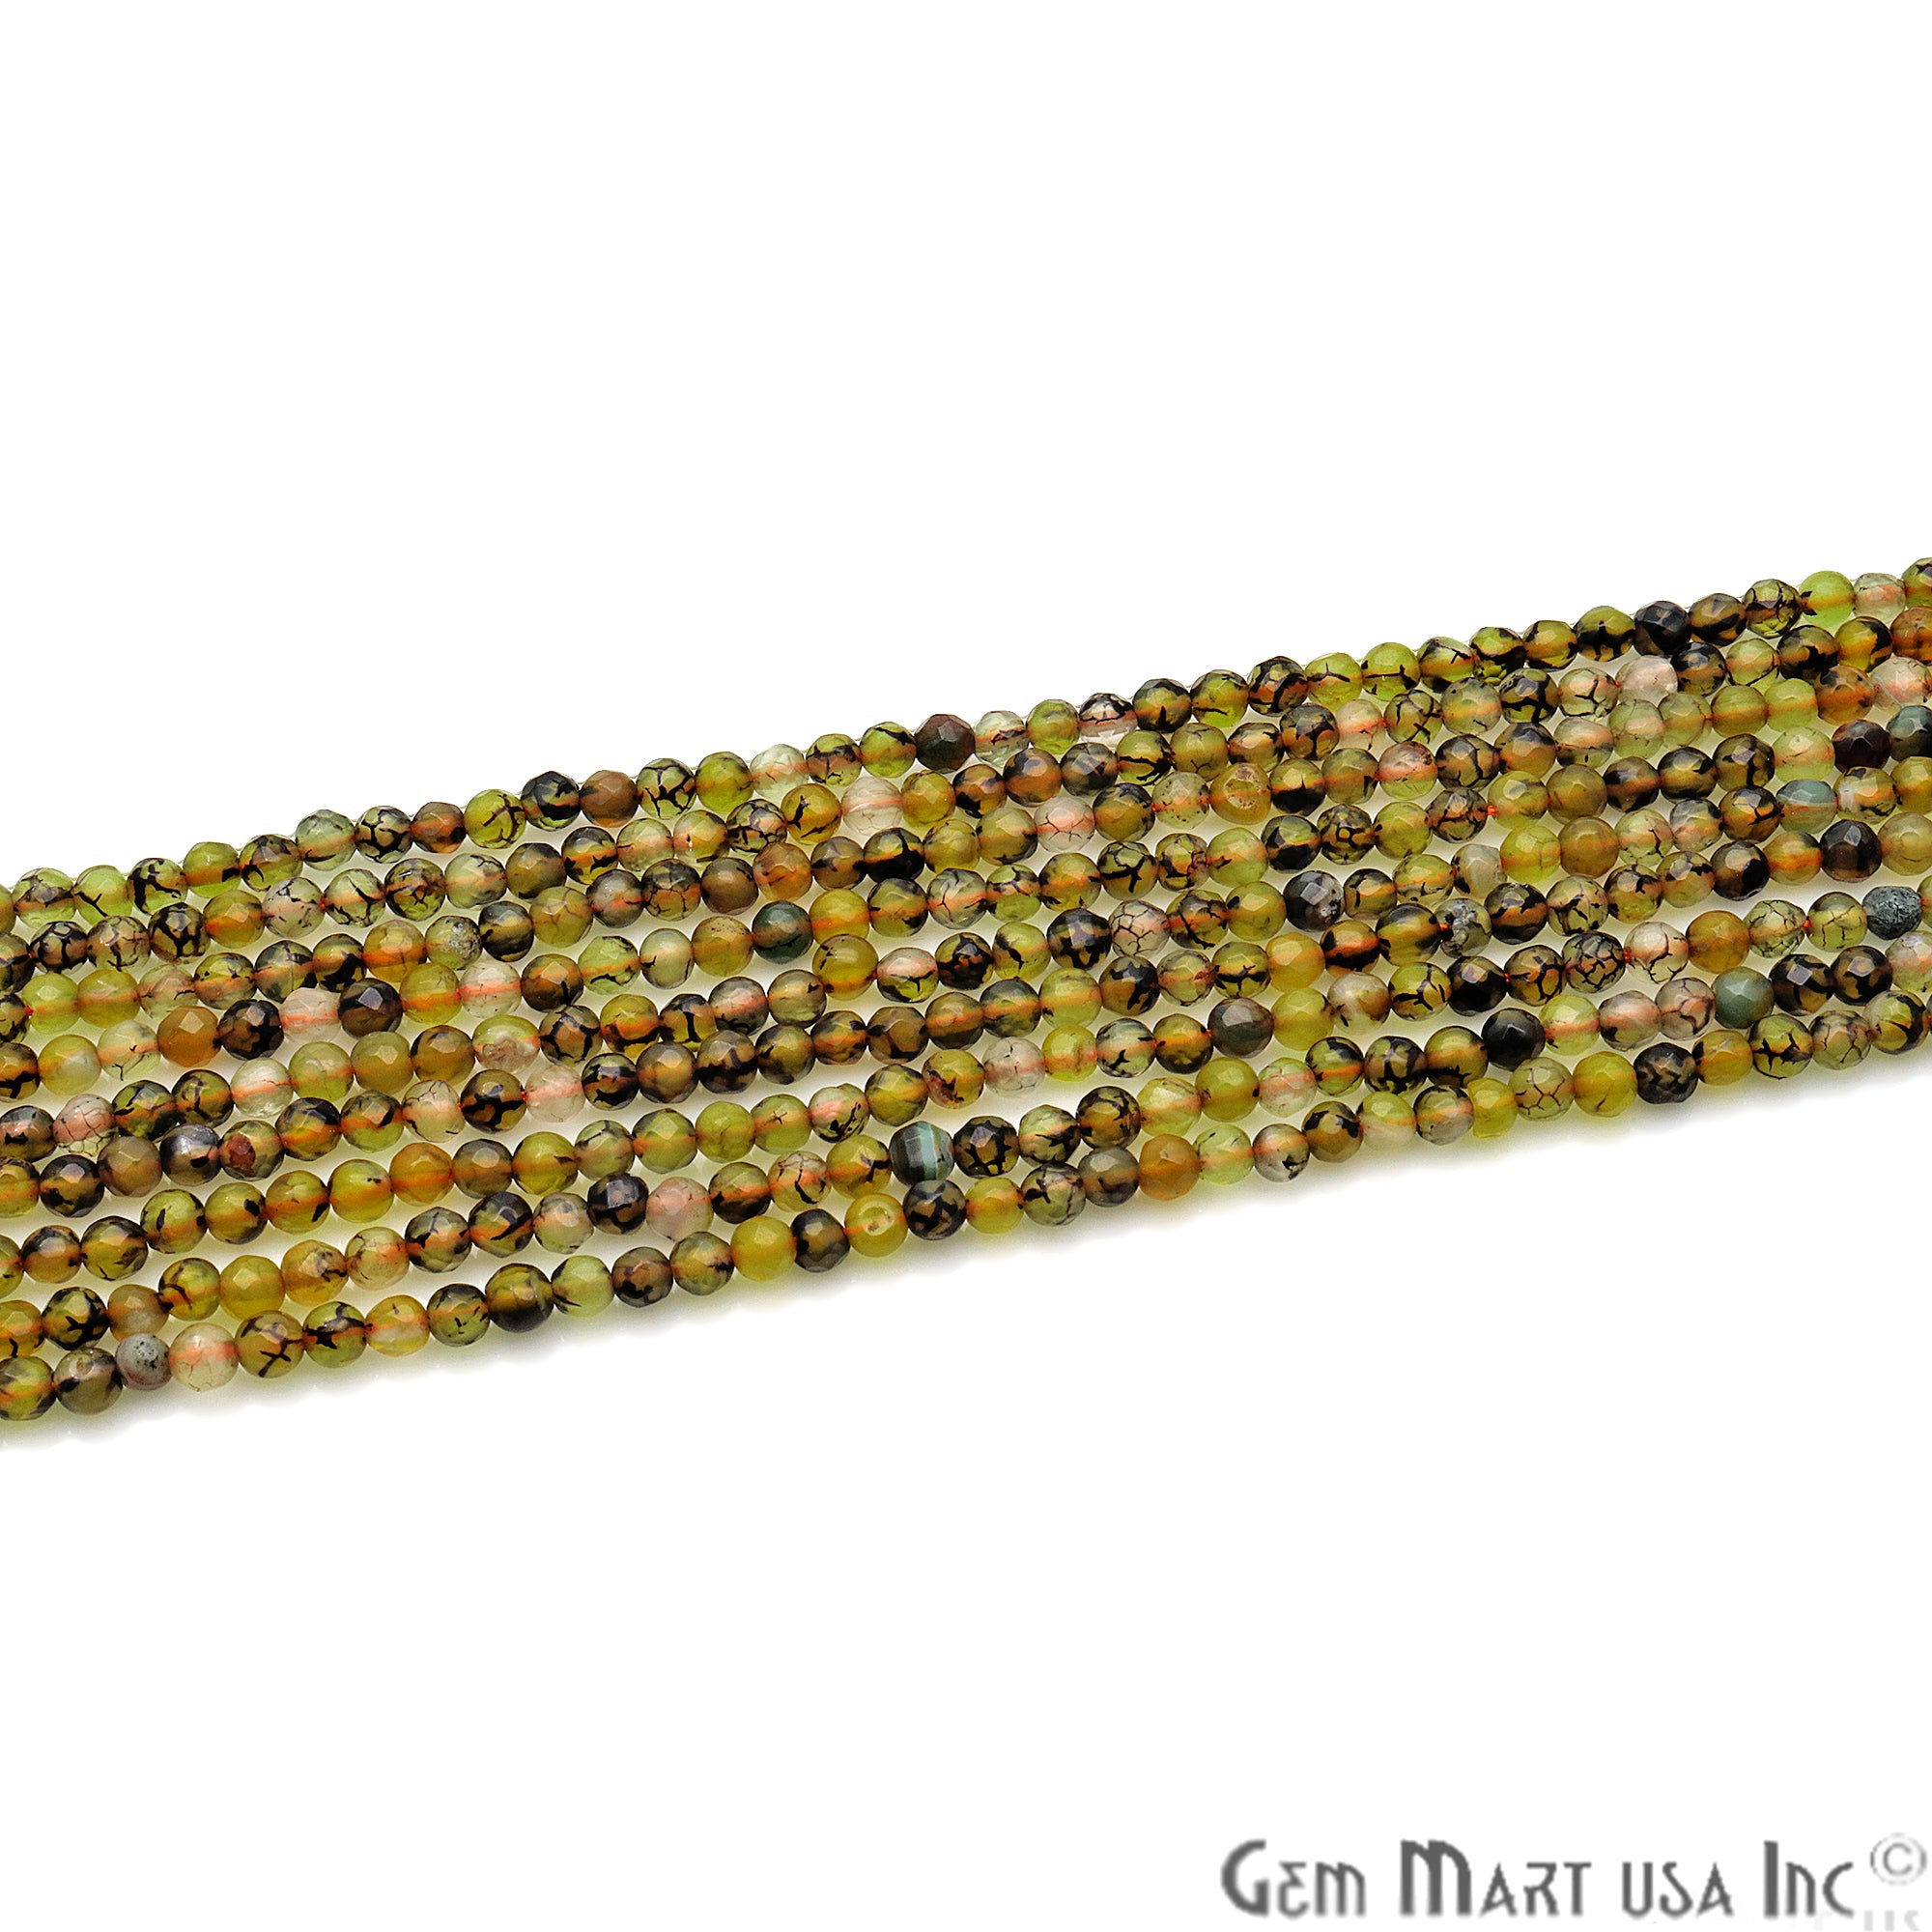 Bio Lemon Jade 4mm Faceted Rondelle Beads Strands 14Inch - GemMartUSA